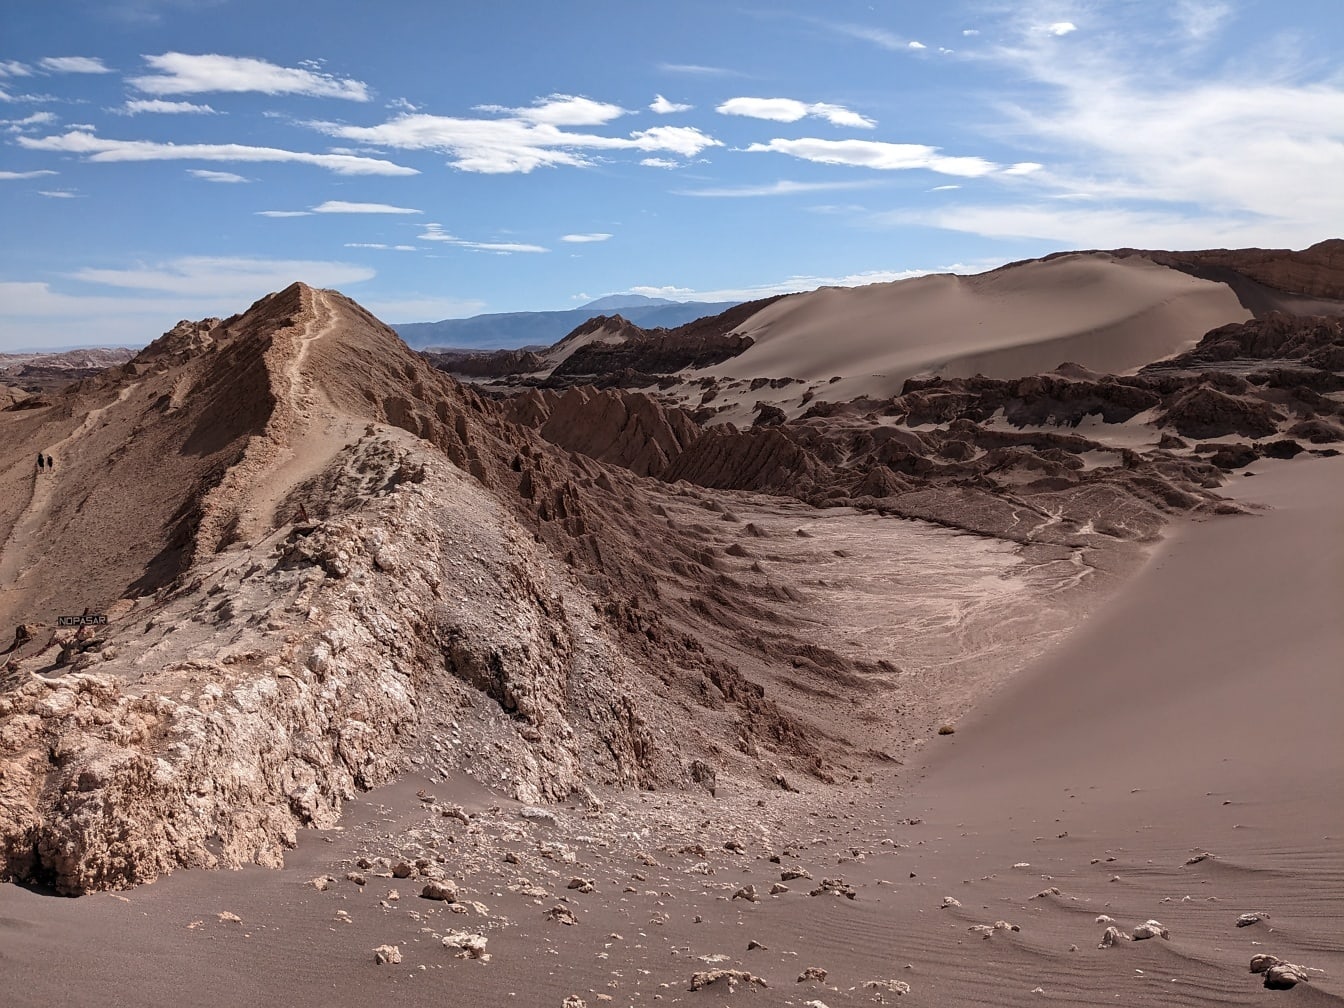 Pješčana brda na visoravni u pustinji Atacama najsuše mjesto na svijetu